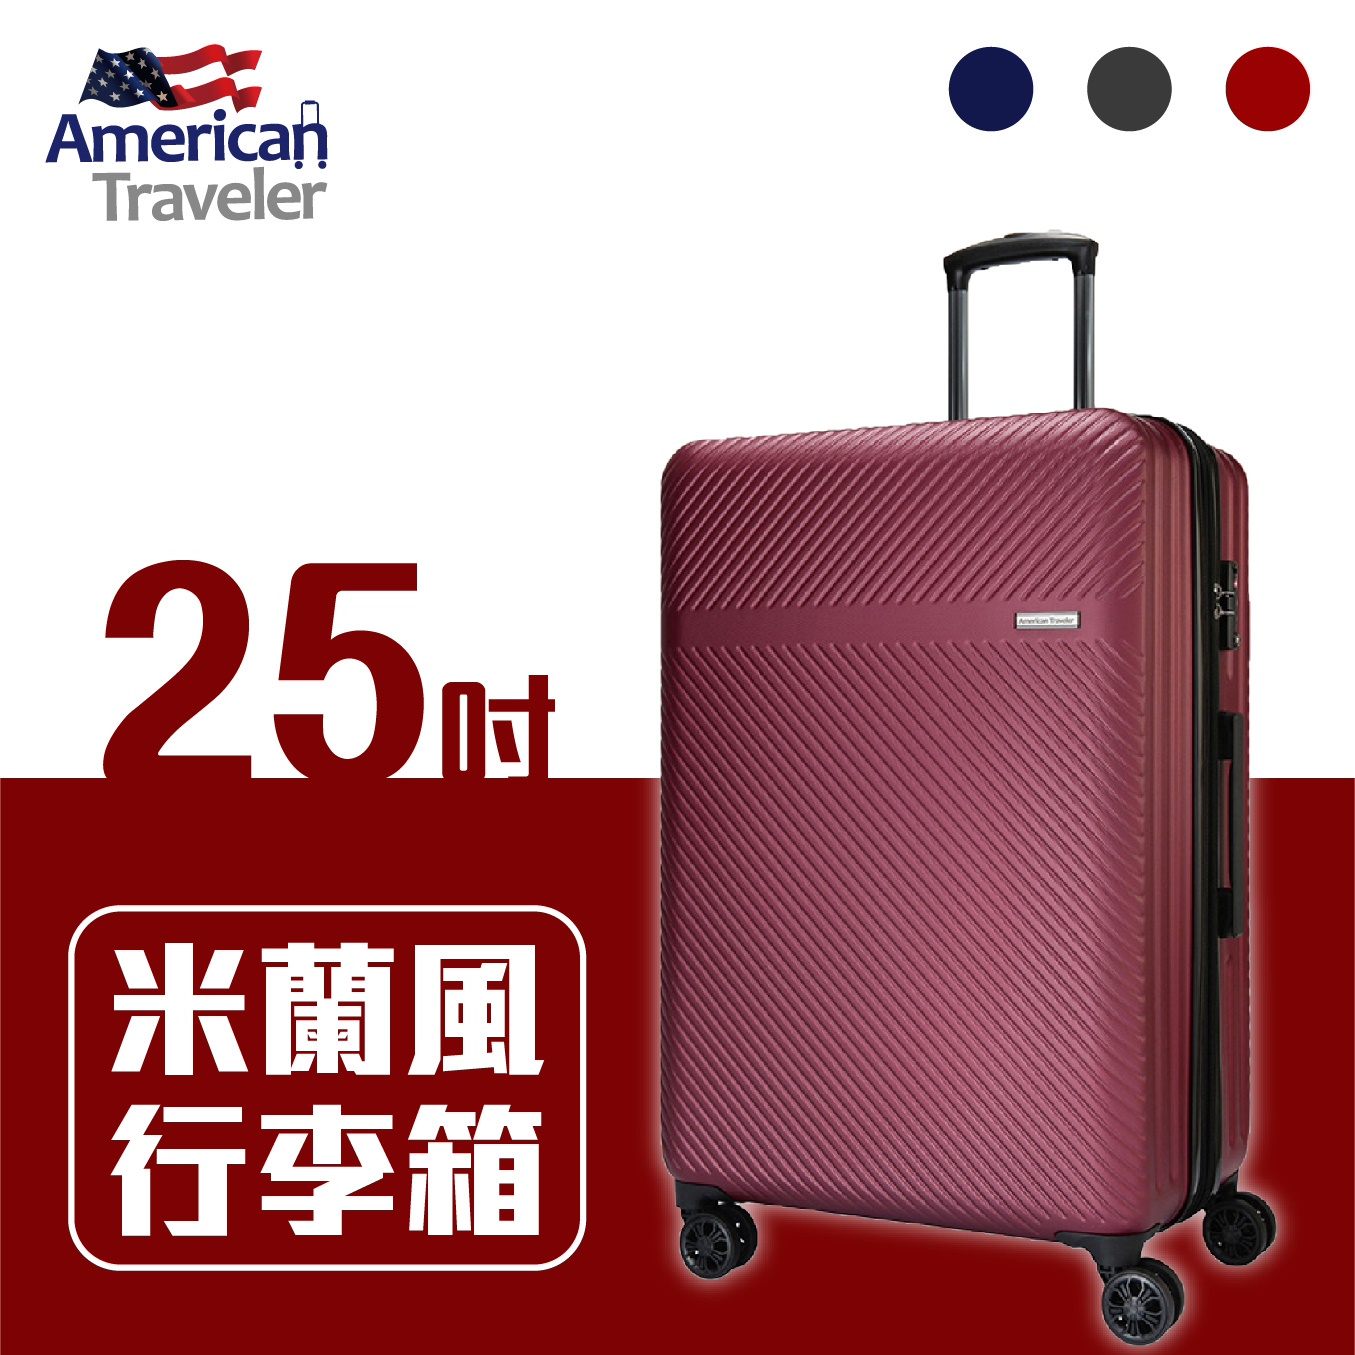 【免運】American Traveler 米蘭風 超輕防刮25吋行李箱 酒紅 登機箱 可擴充容量設計 ABS材質